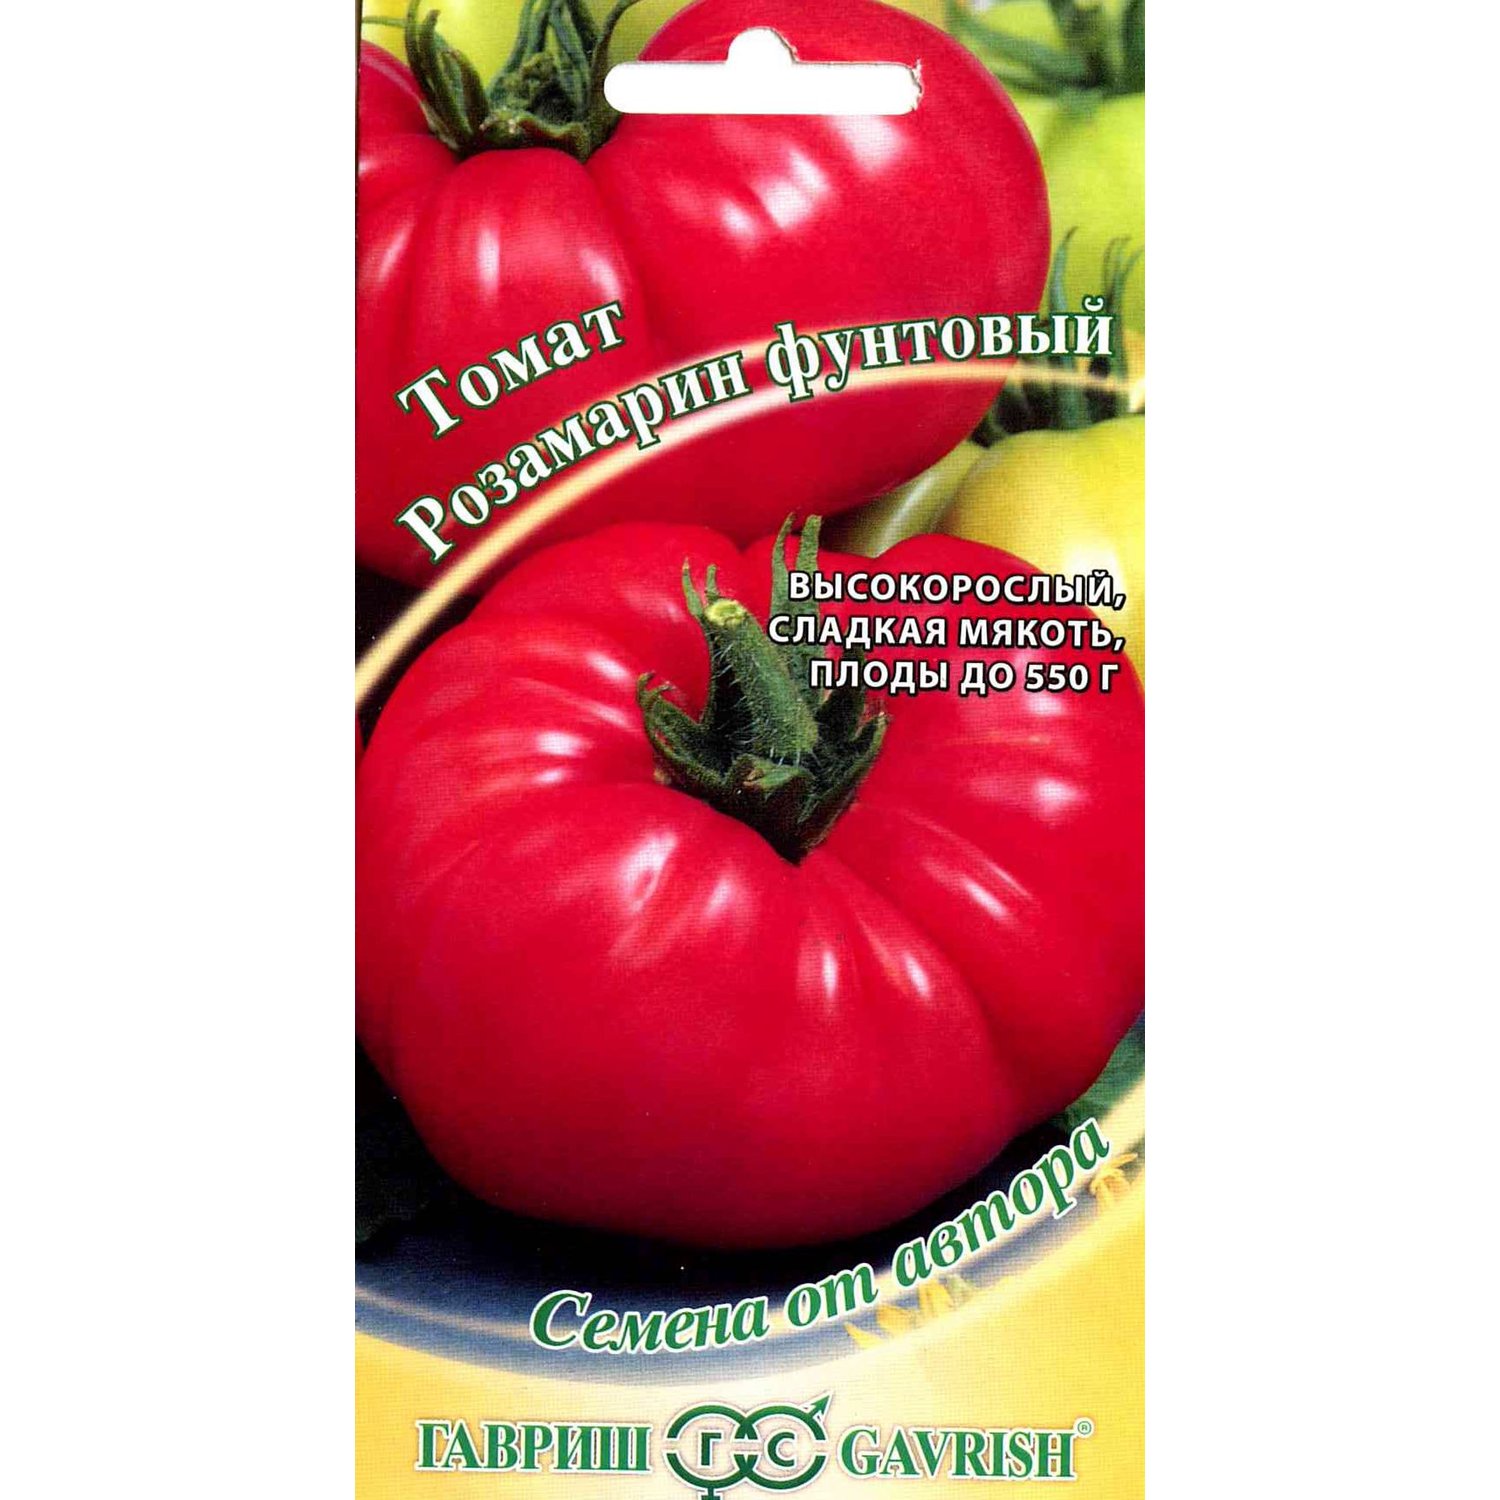 ᐉ томат розмарин: описание сорта, характеристики, фото - orensad198.ru